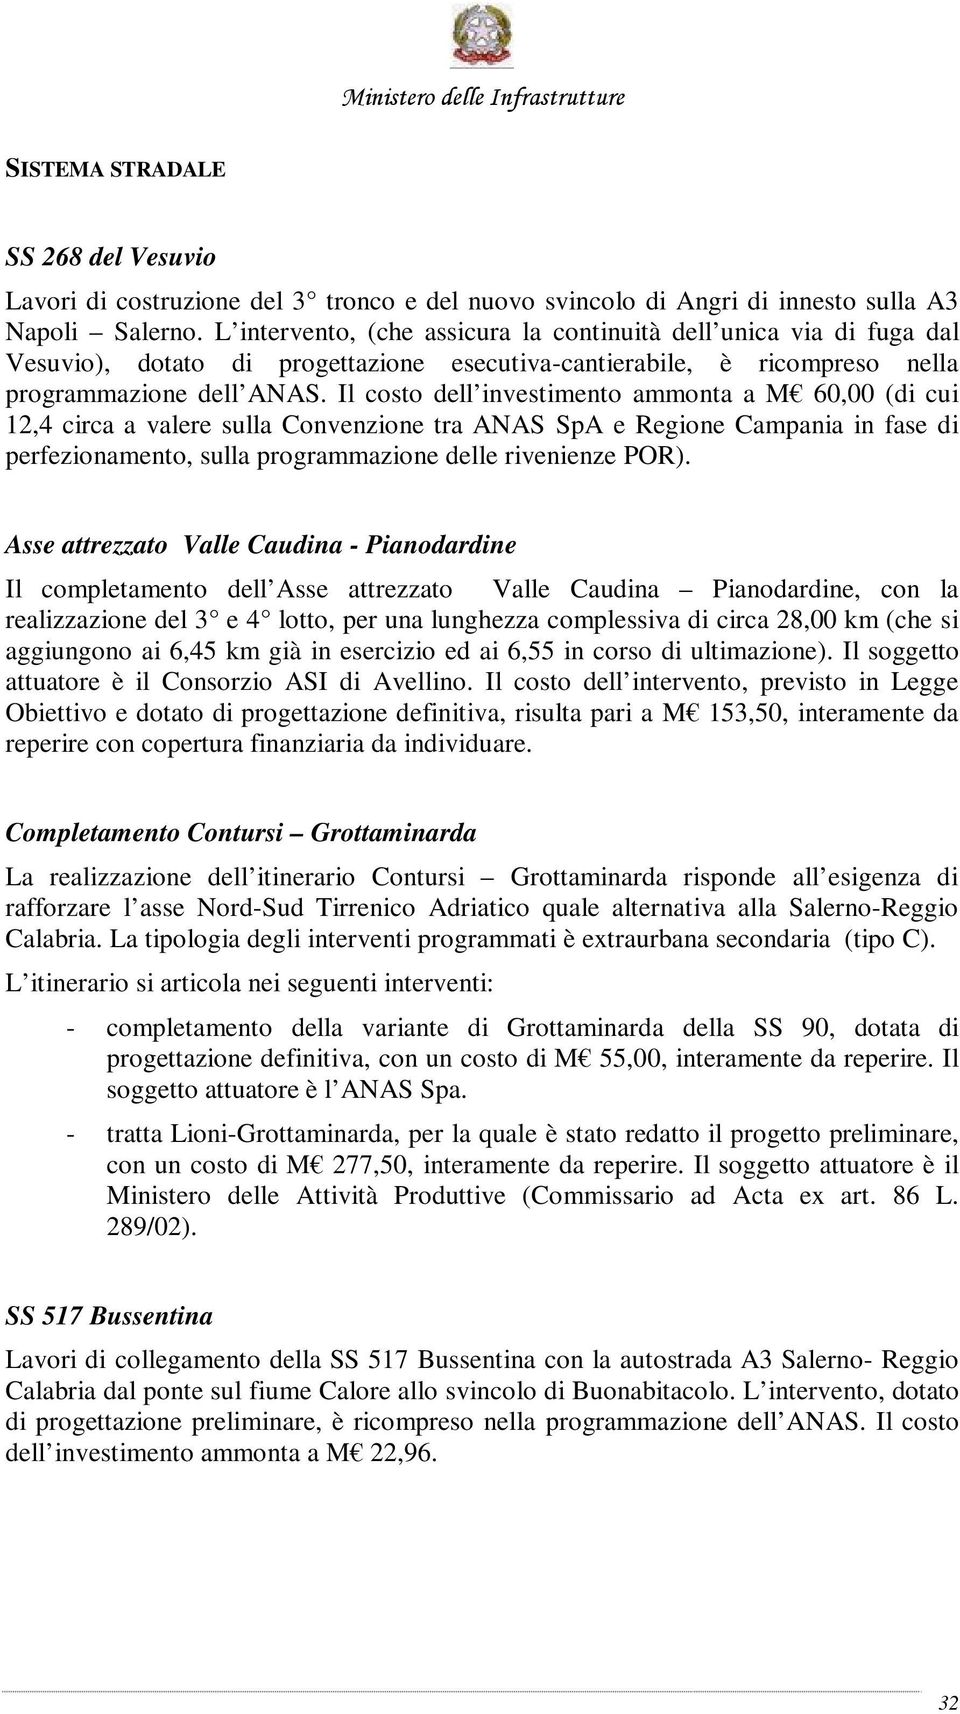 Il costo dell investimento ammonta a M 60,00 (di cui 12,4 circa a valere sulla Convenzione tra ANAS SpA e Regione Campania in fase di perfezionamento, sulla programmazione delle rivenienze POR).